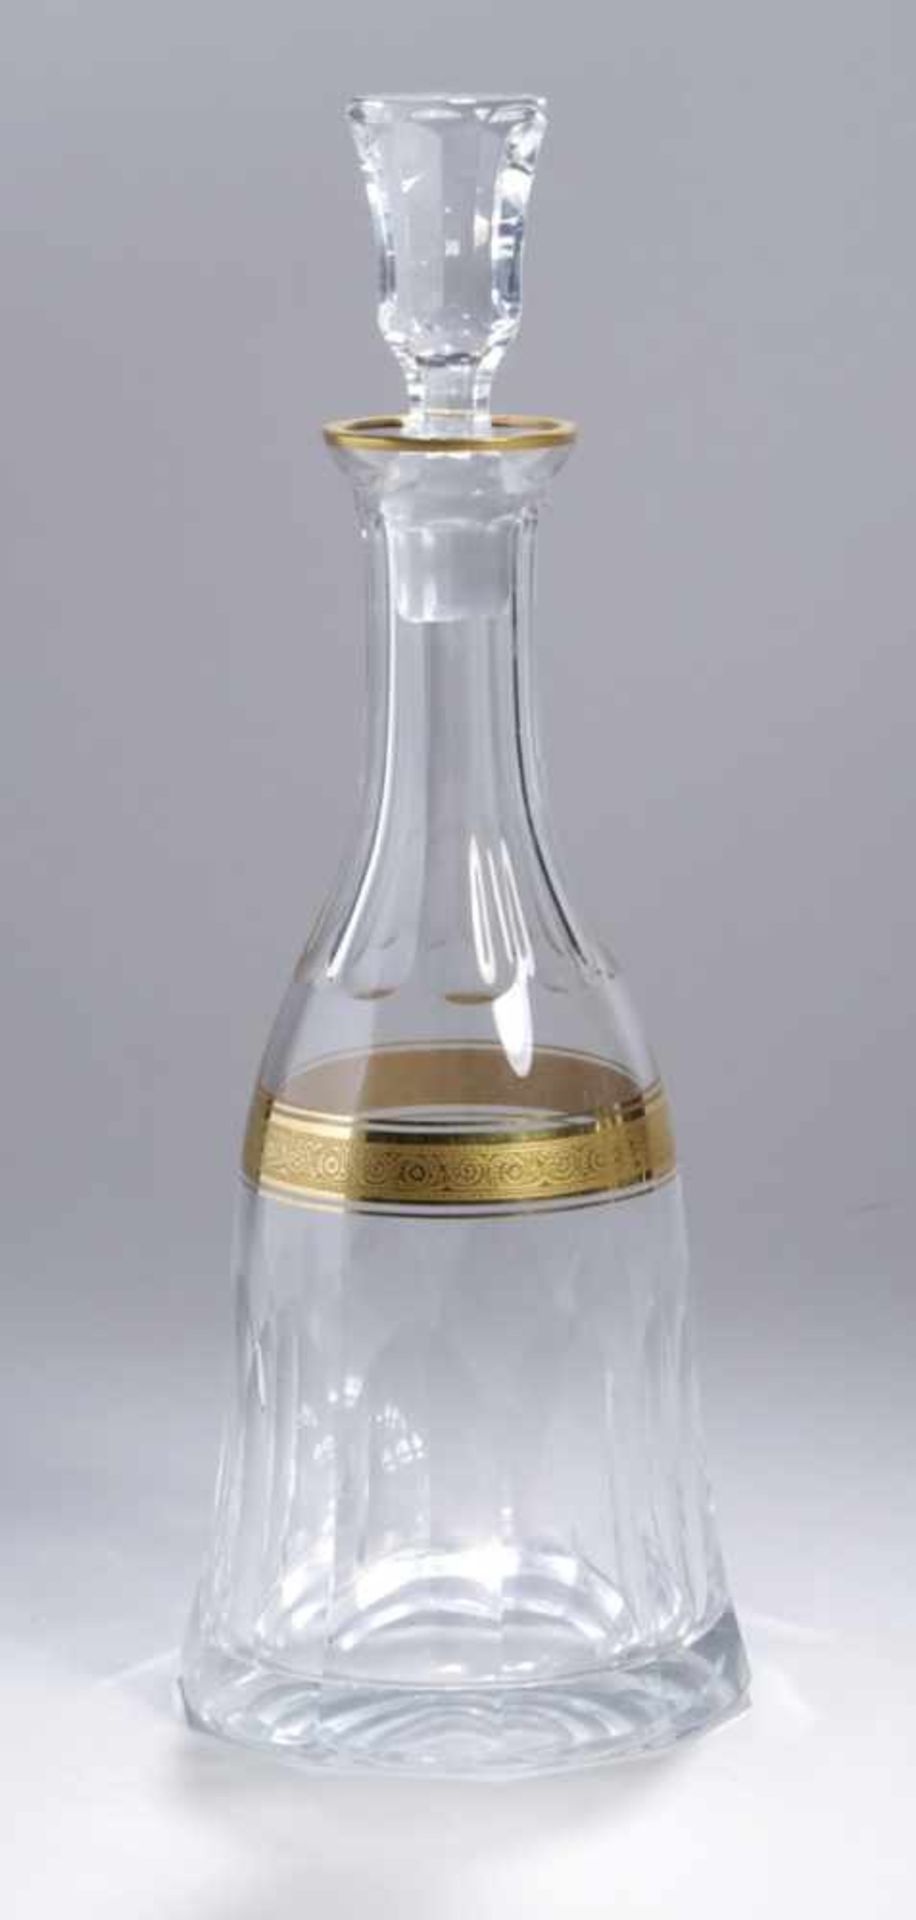 Glas-Karaffe, Theresienthal, 20. Jh., hoher, glockenförmiger Glaskorpus, übergehend inEnghals mit